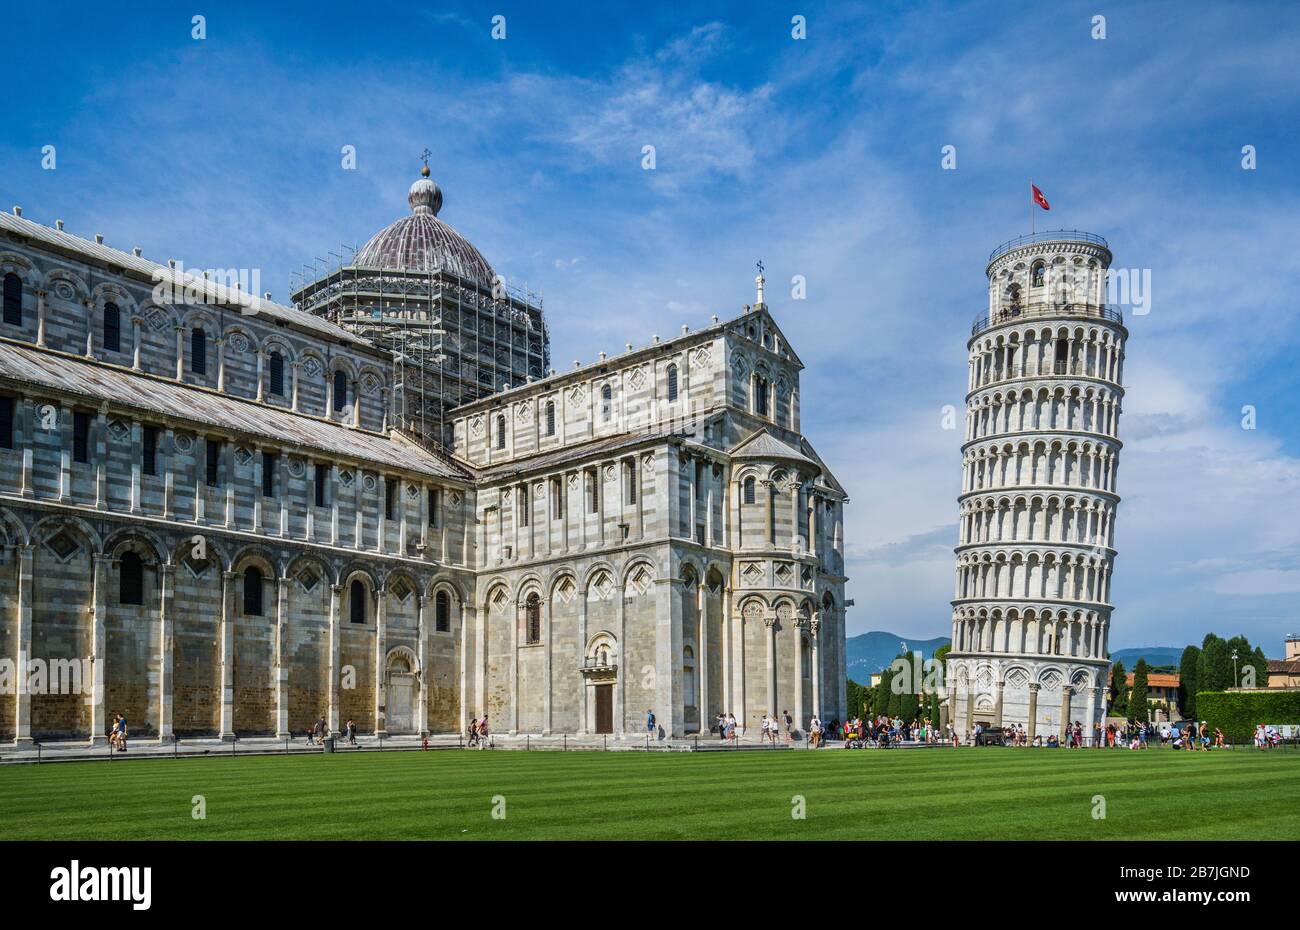 Catedral de Pisa, Duomo di Pisa, una catedral medieval católica romana dedicada a la Asunción de la Virgen María, en la Piazza dei Miracoli con el Foto de stock